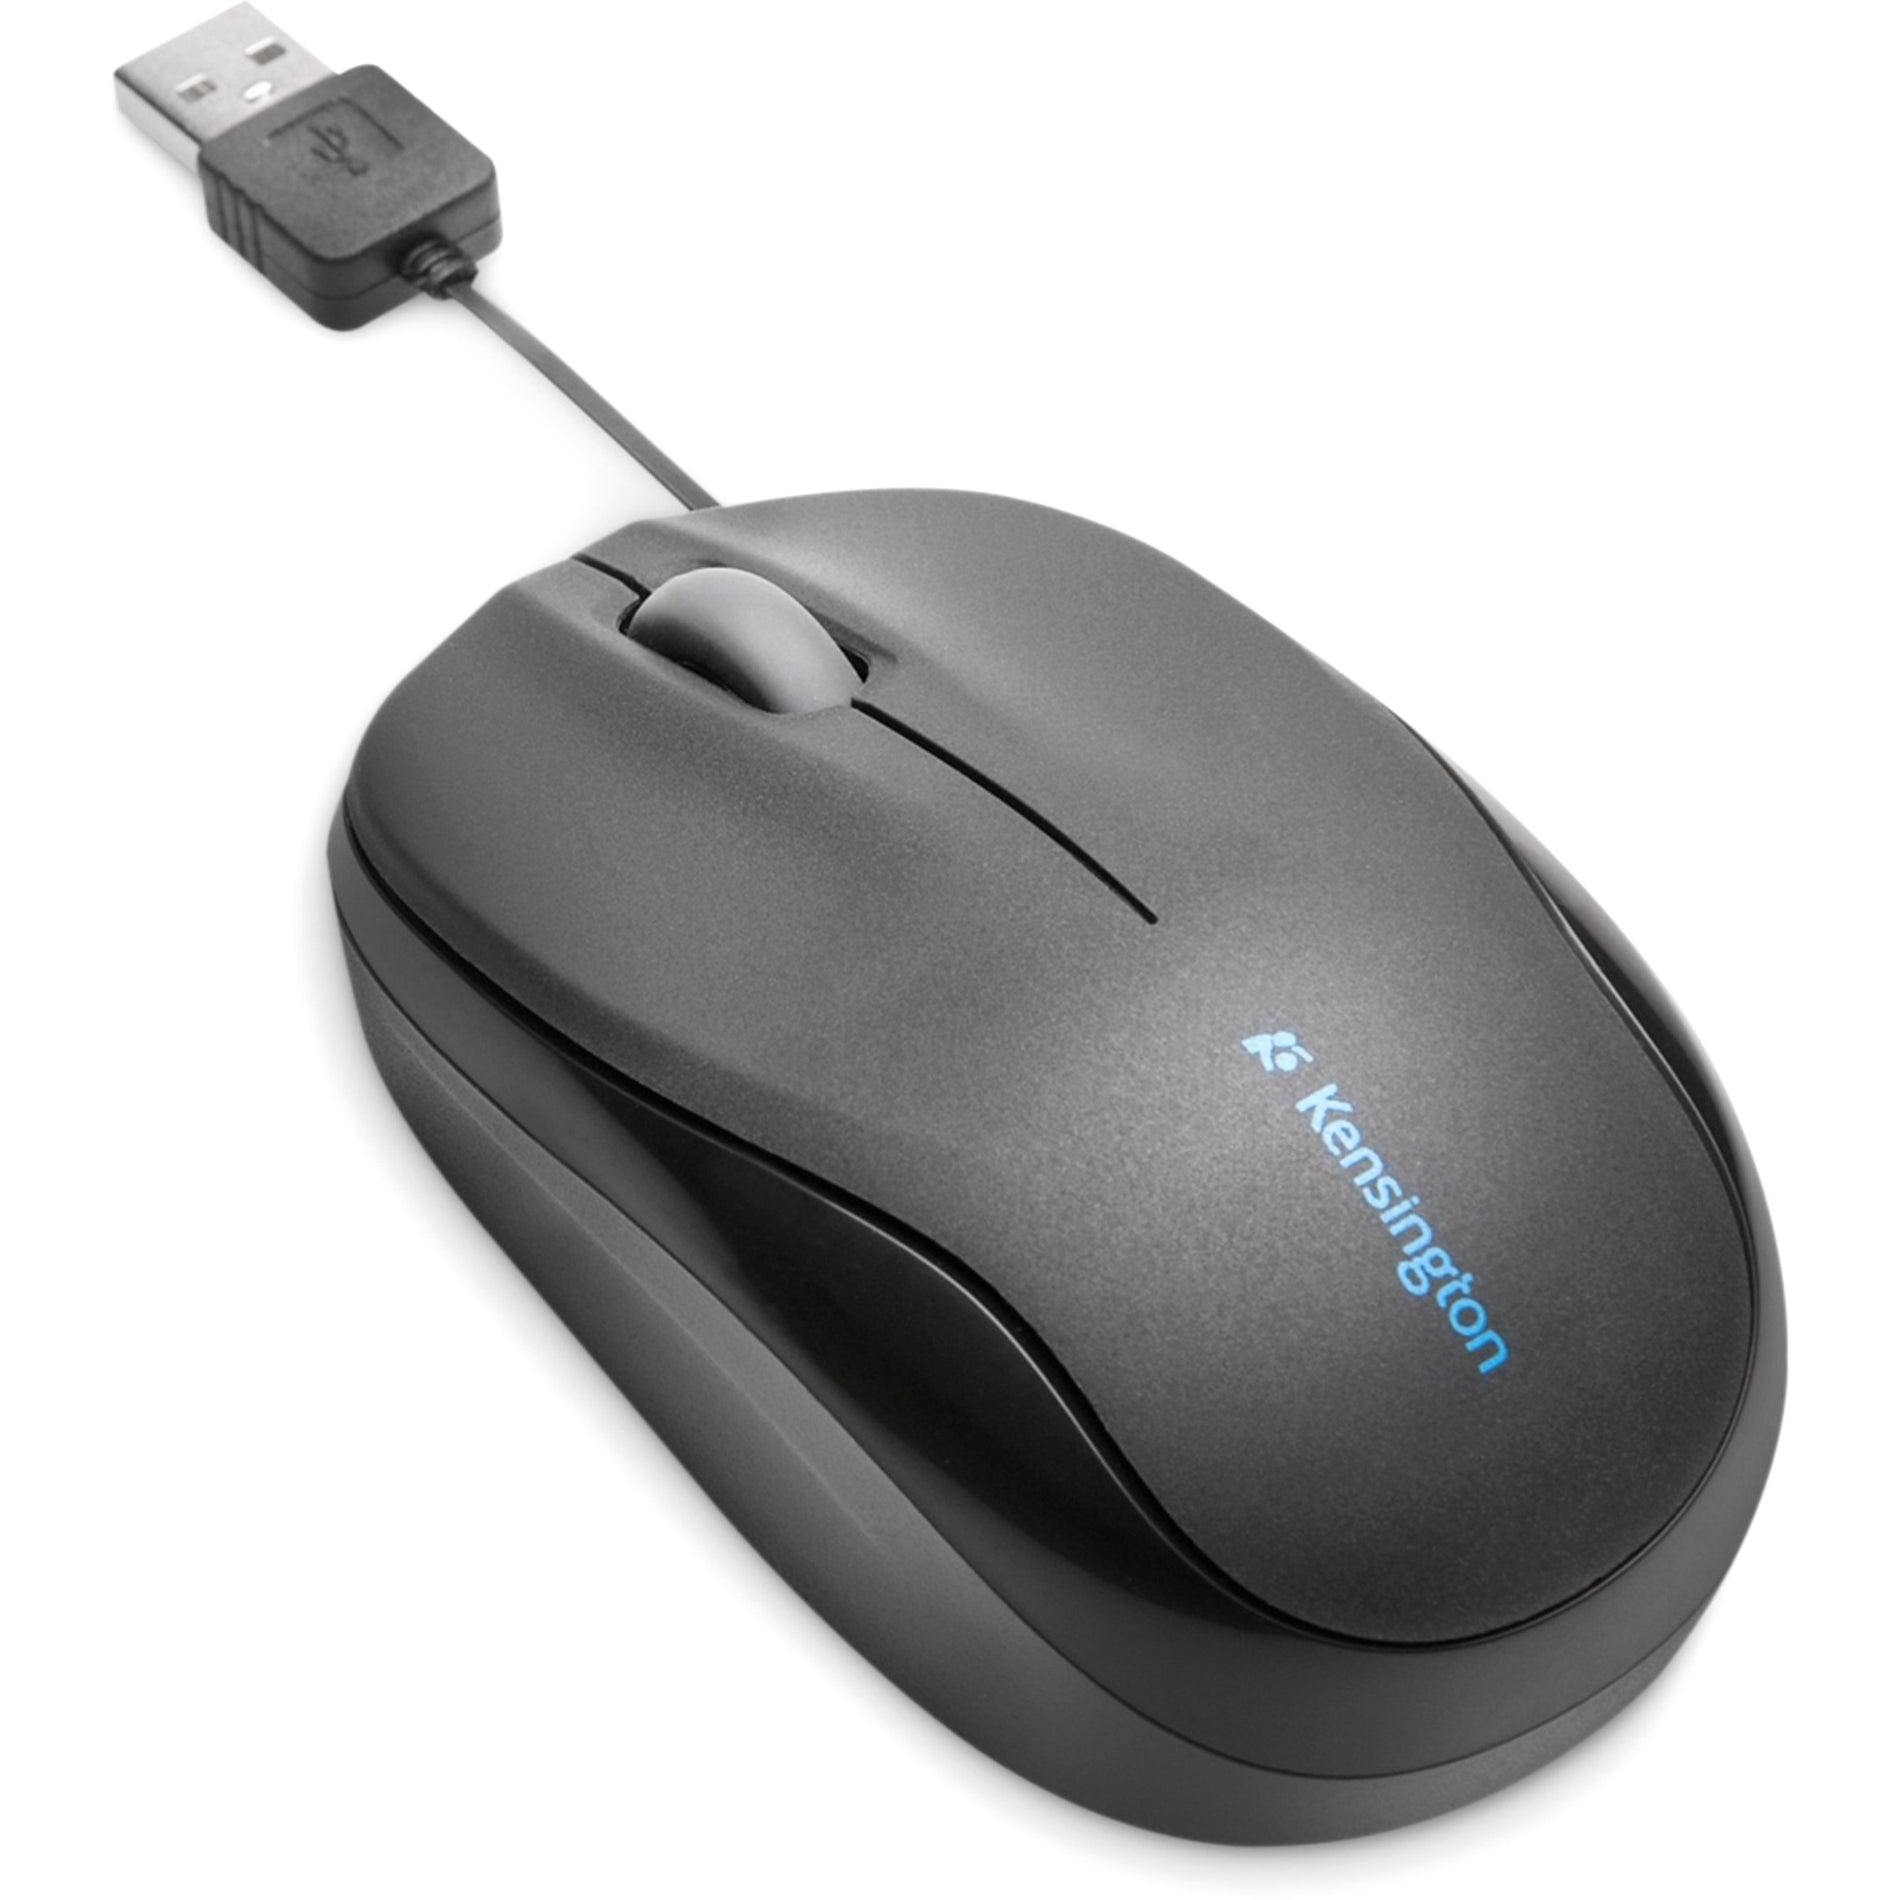 肯辛顿 K72339USA Pro Fit 移动式可伸缩鼠标，黑色 - 2年保修，USB连接 肯辛顿品牌 肯辛顿